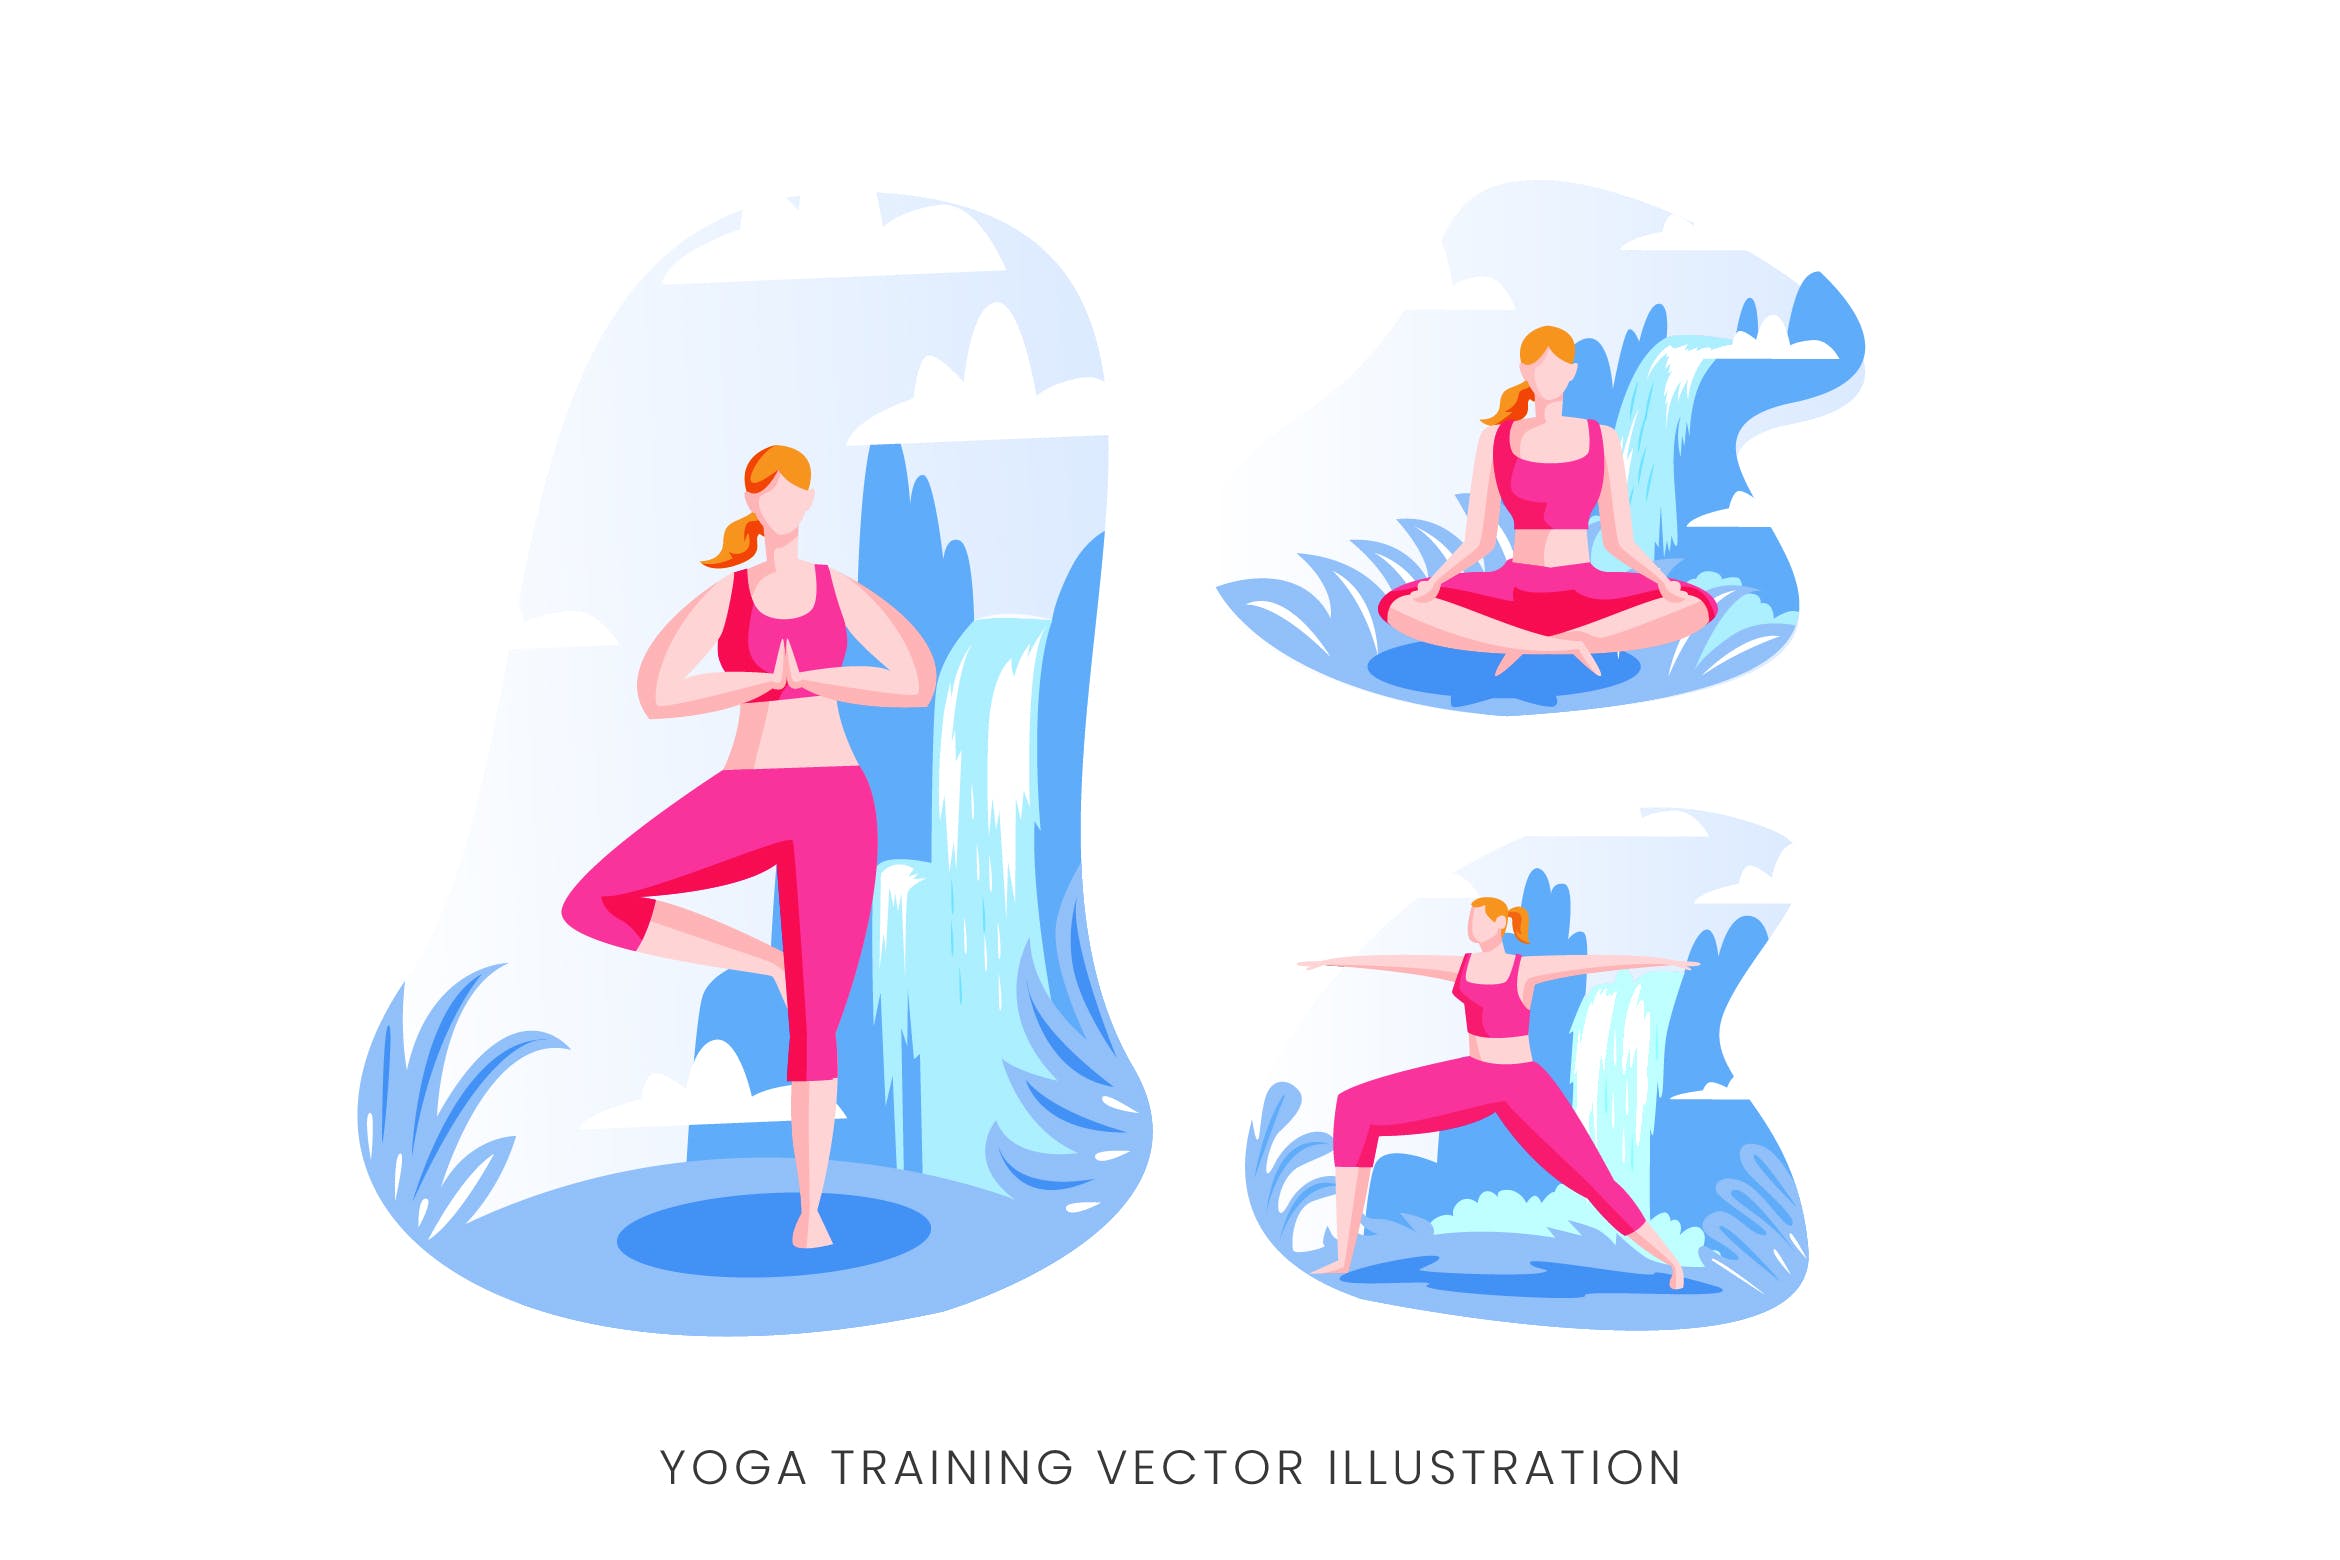 瑜伽训练人物形象矢量手绘非凡图库精选设计素材 Yoga Training Vector Character Set插图